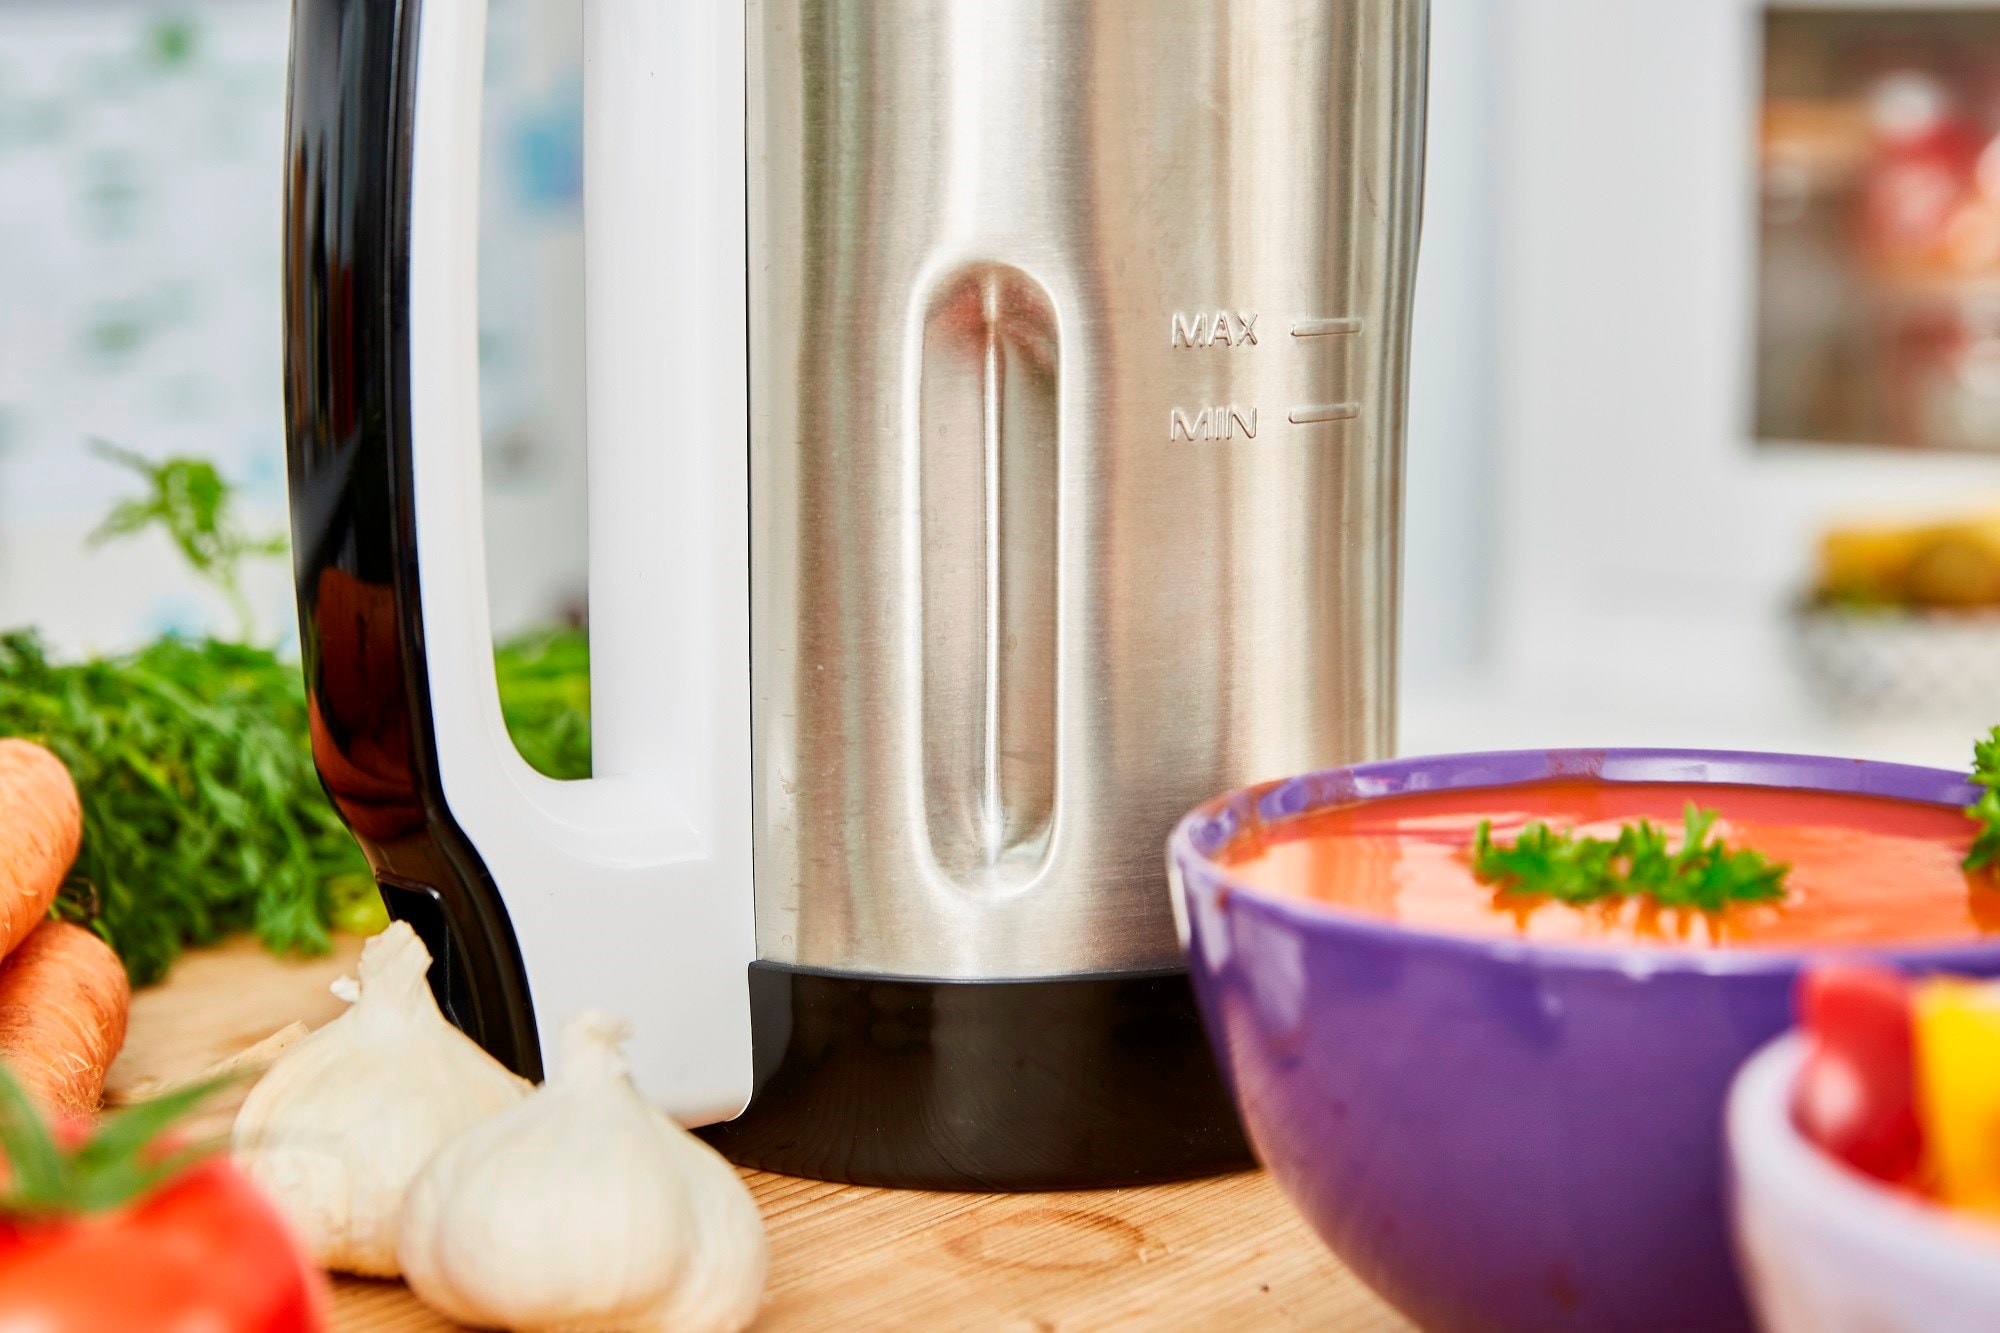 Avis robot culinaire Ninja pour la préparation des soupes